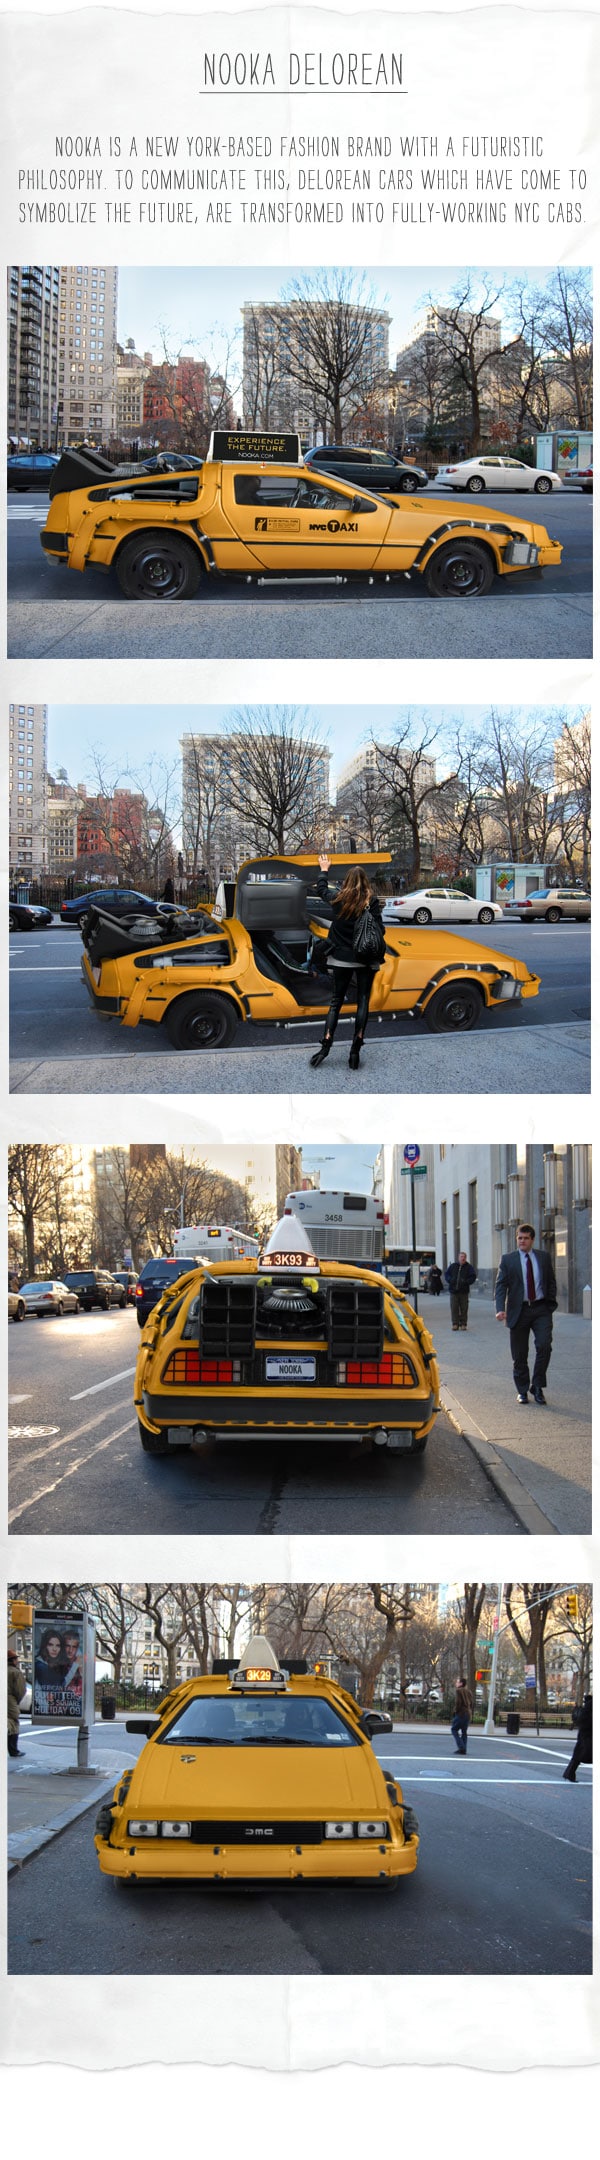 delorean-car-taxi-concept